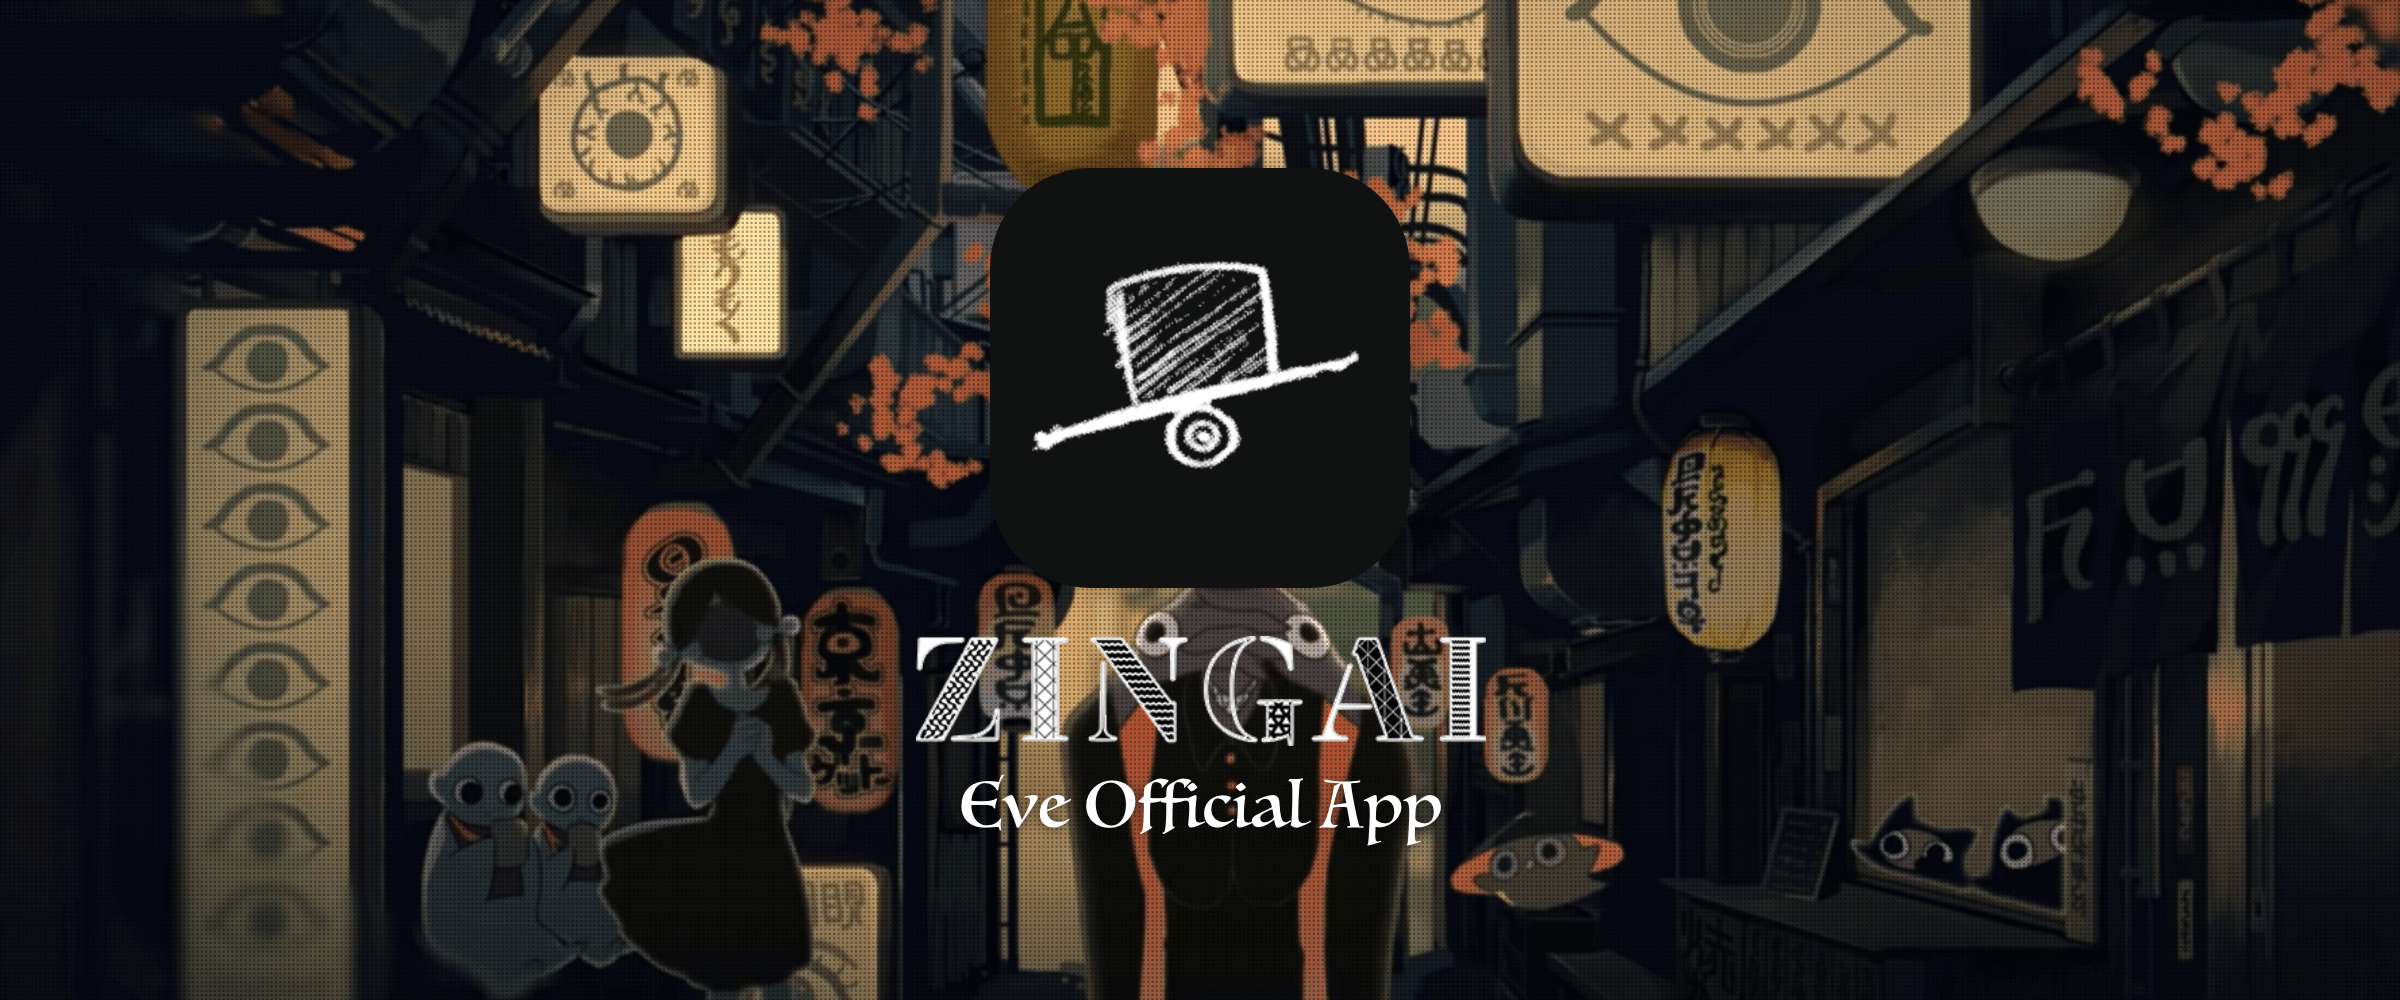 事前登録者数1万人達成 Eve公式アプリ Zingai の事前登録が11 24 火 よりスタート 株式会社アカツキのプレスリリース